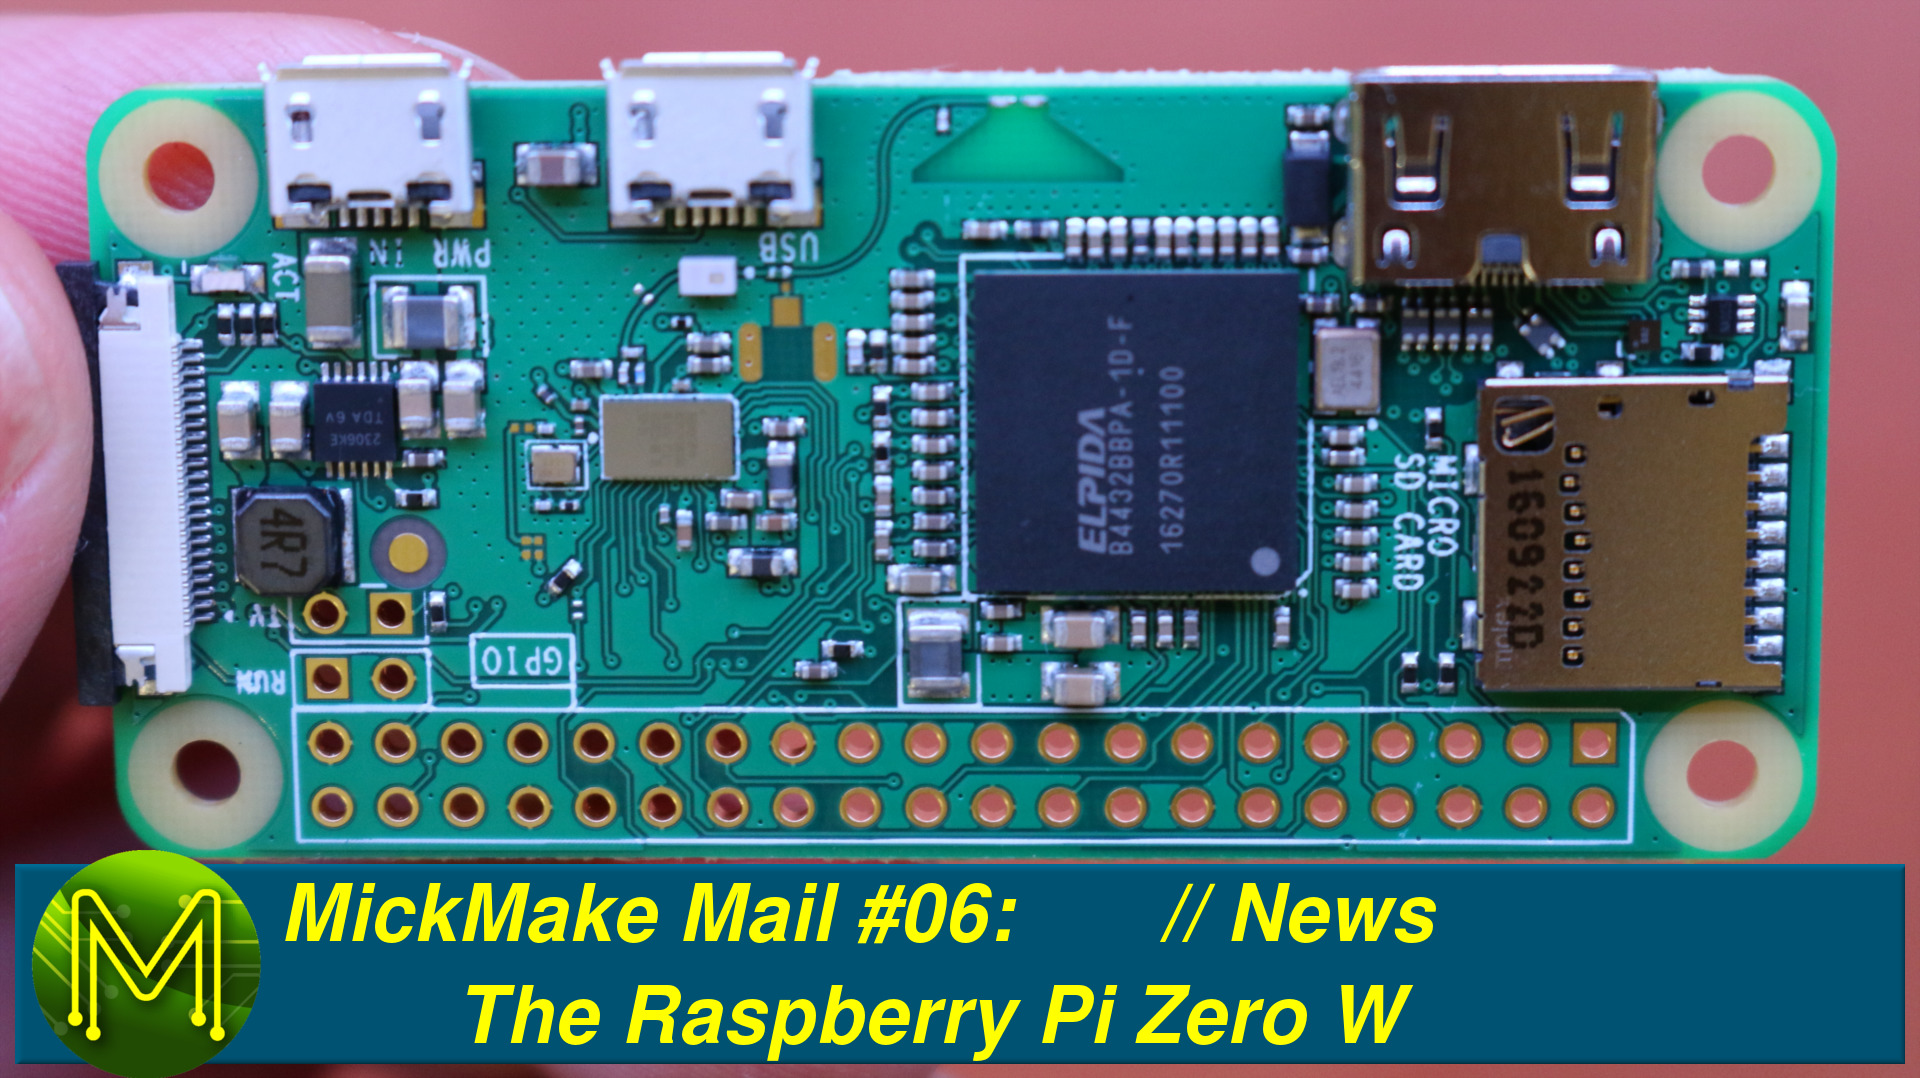 MickMake Mail #06: The Raspberry Pi Zero W // News